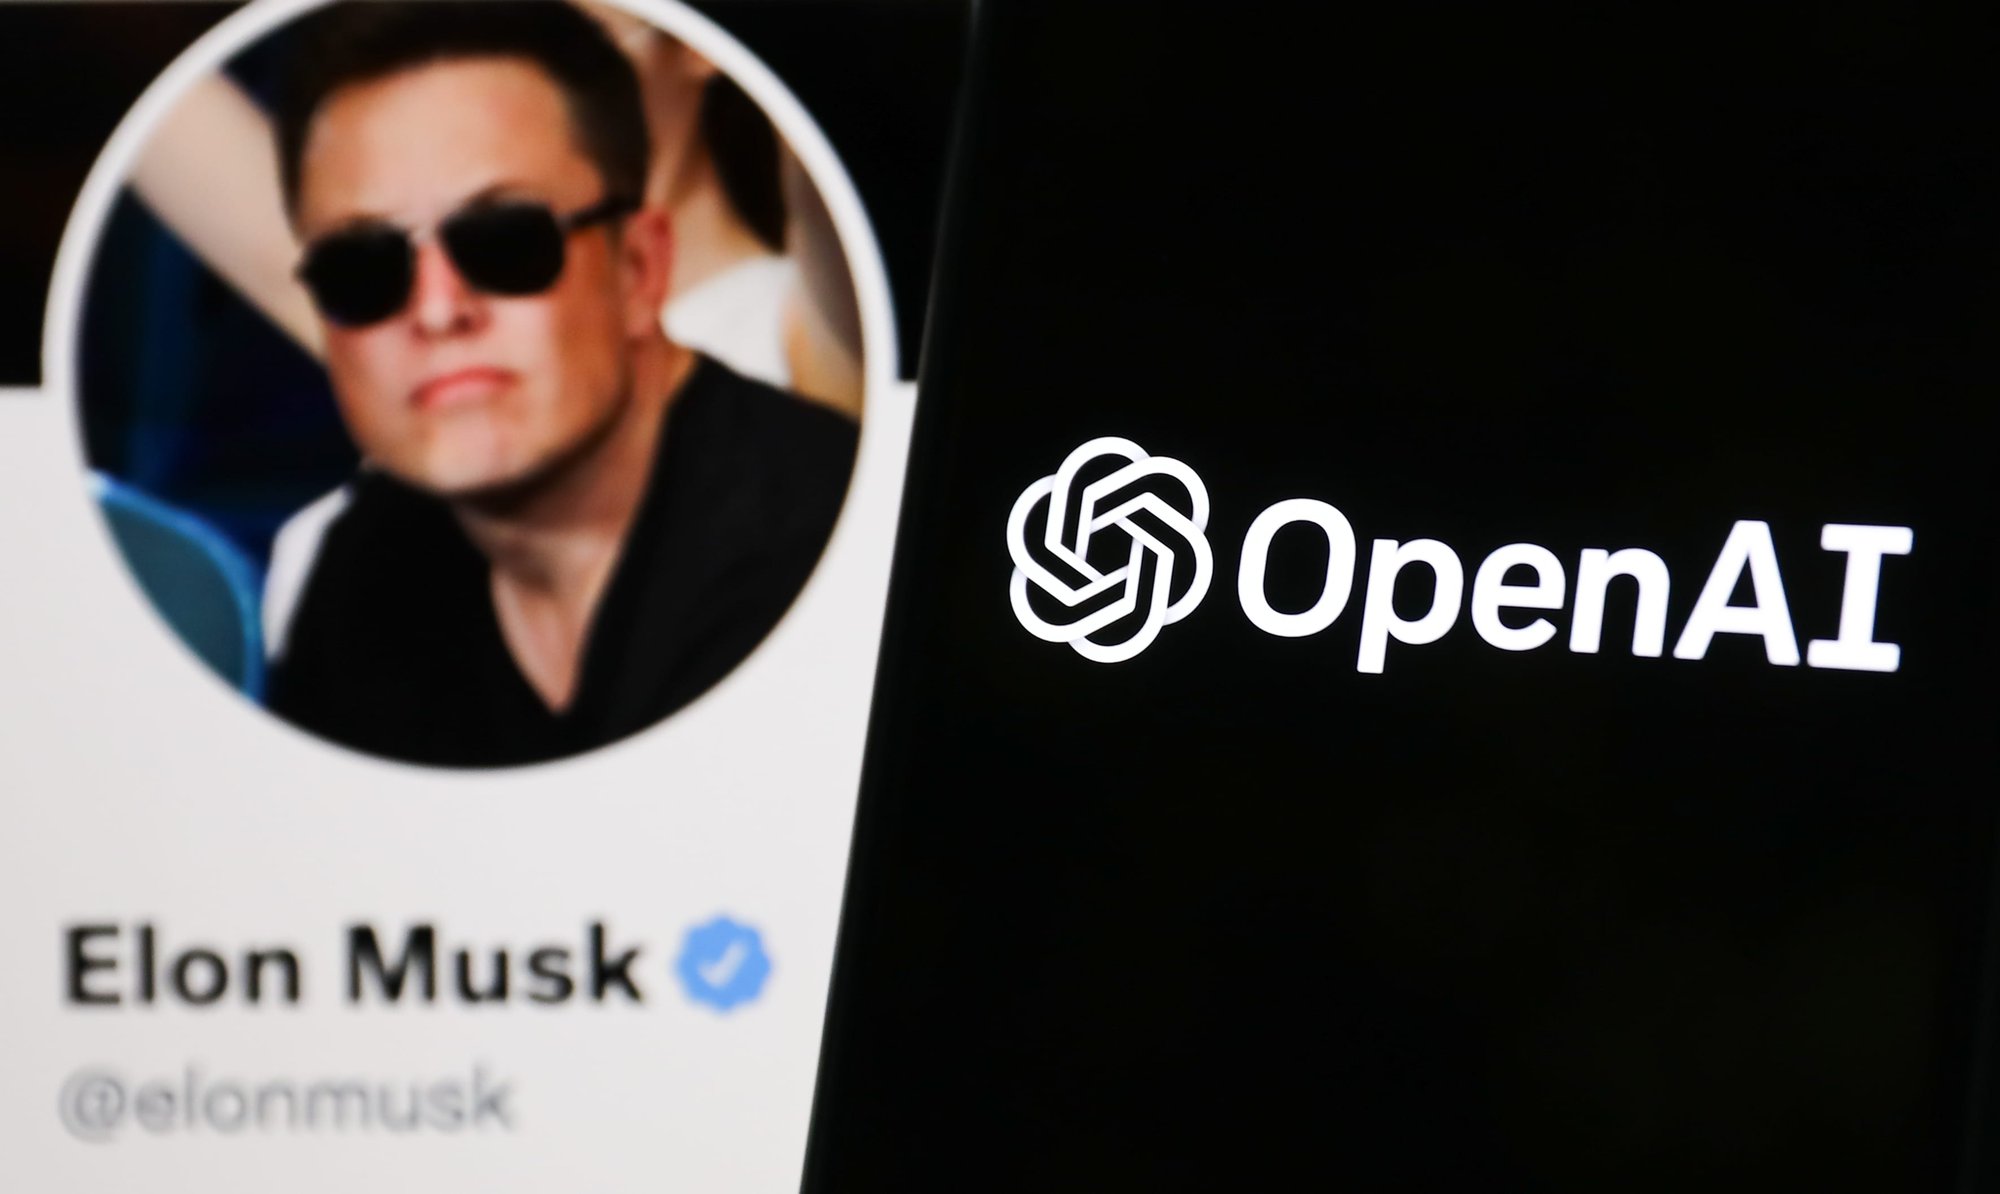 Elon Musk đang lên kế hoạch khởi nghiệp AI để cạnh tranh với OpenAI do ông từng đồng sáng lập